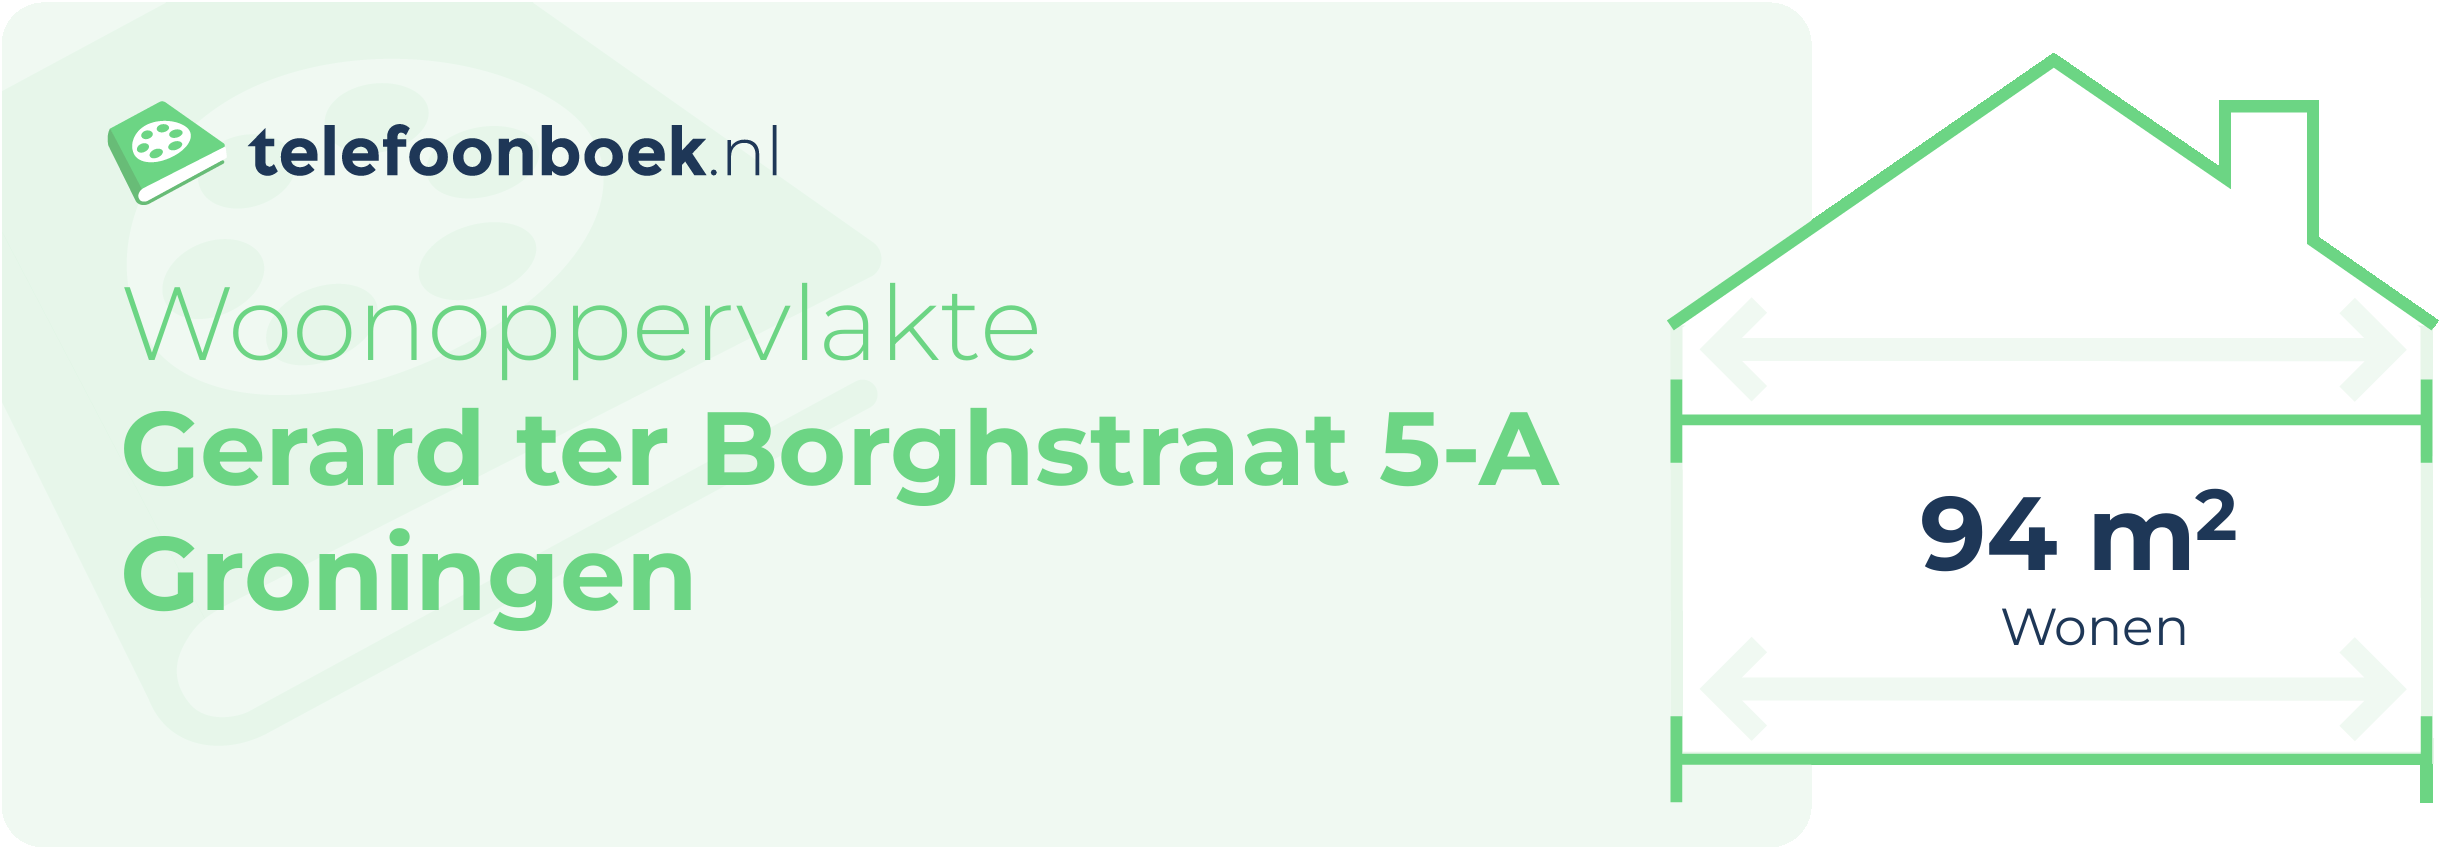 Woonoppervlakte Gerard Ter Borghstraat 5-A Groningen